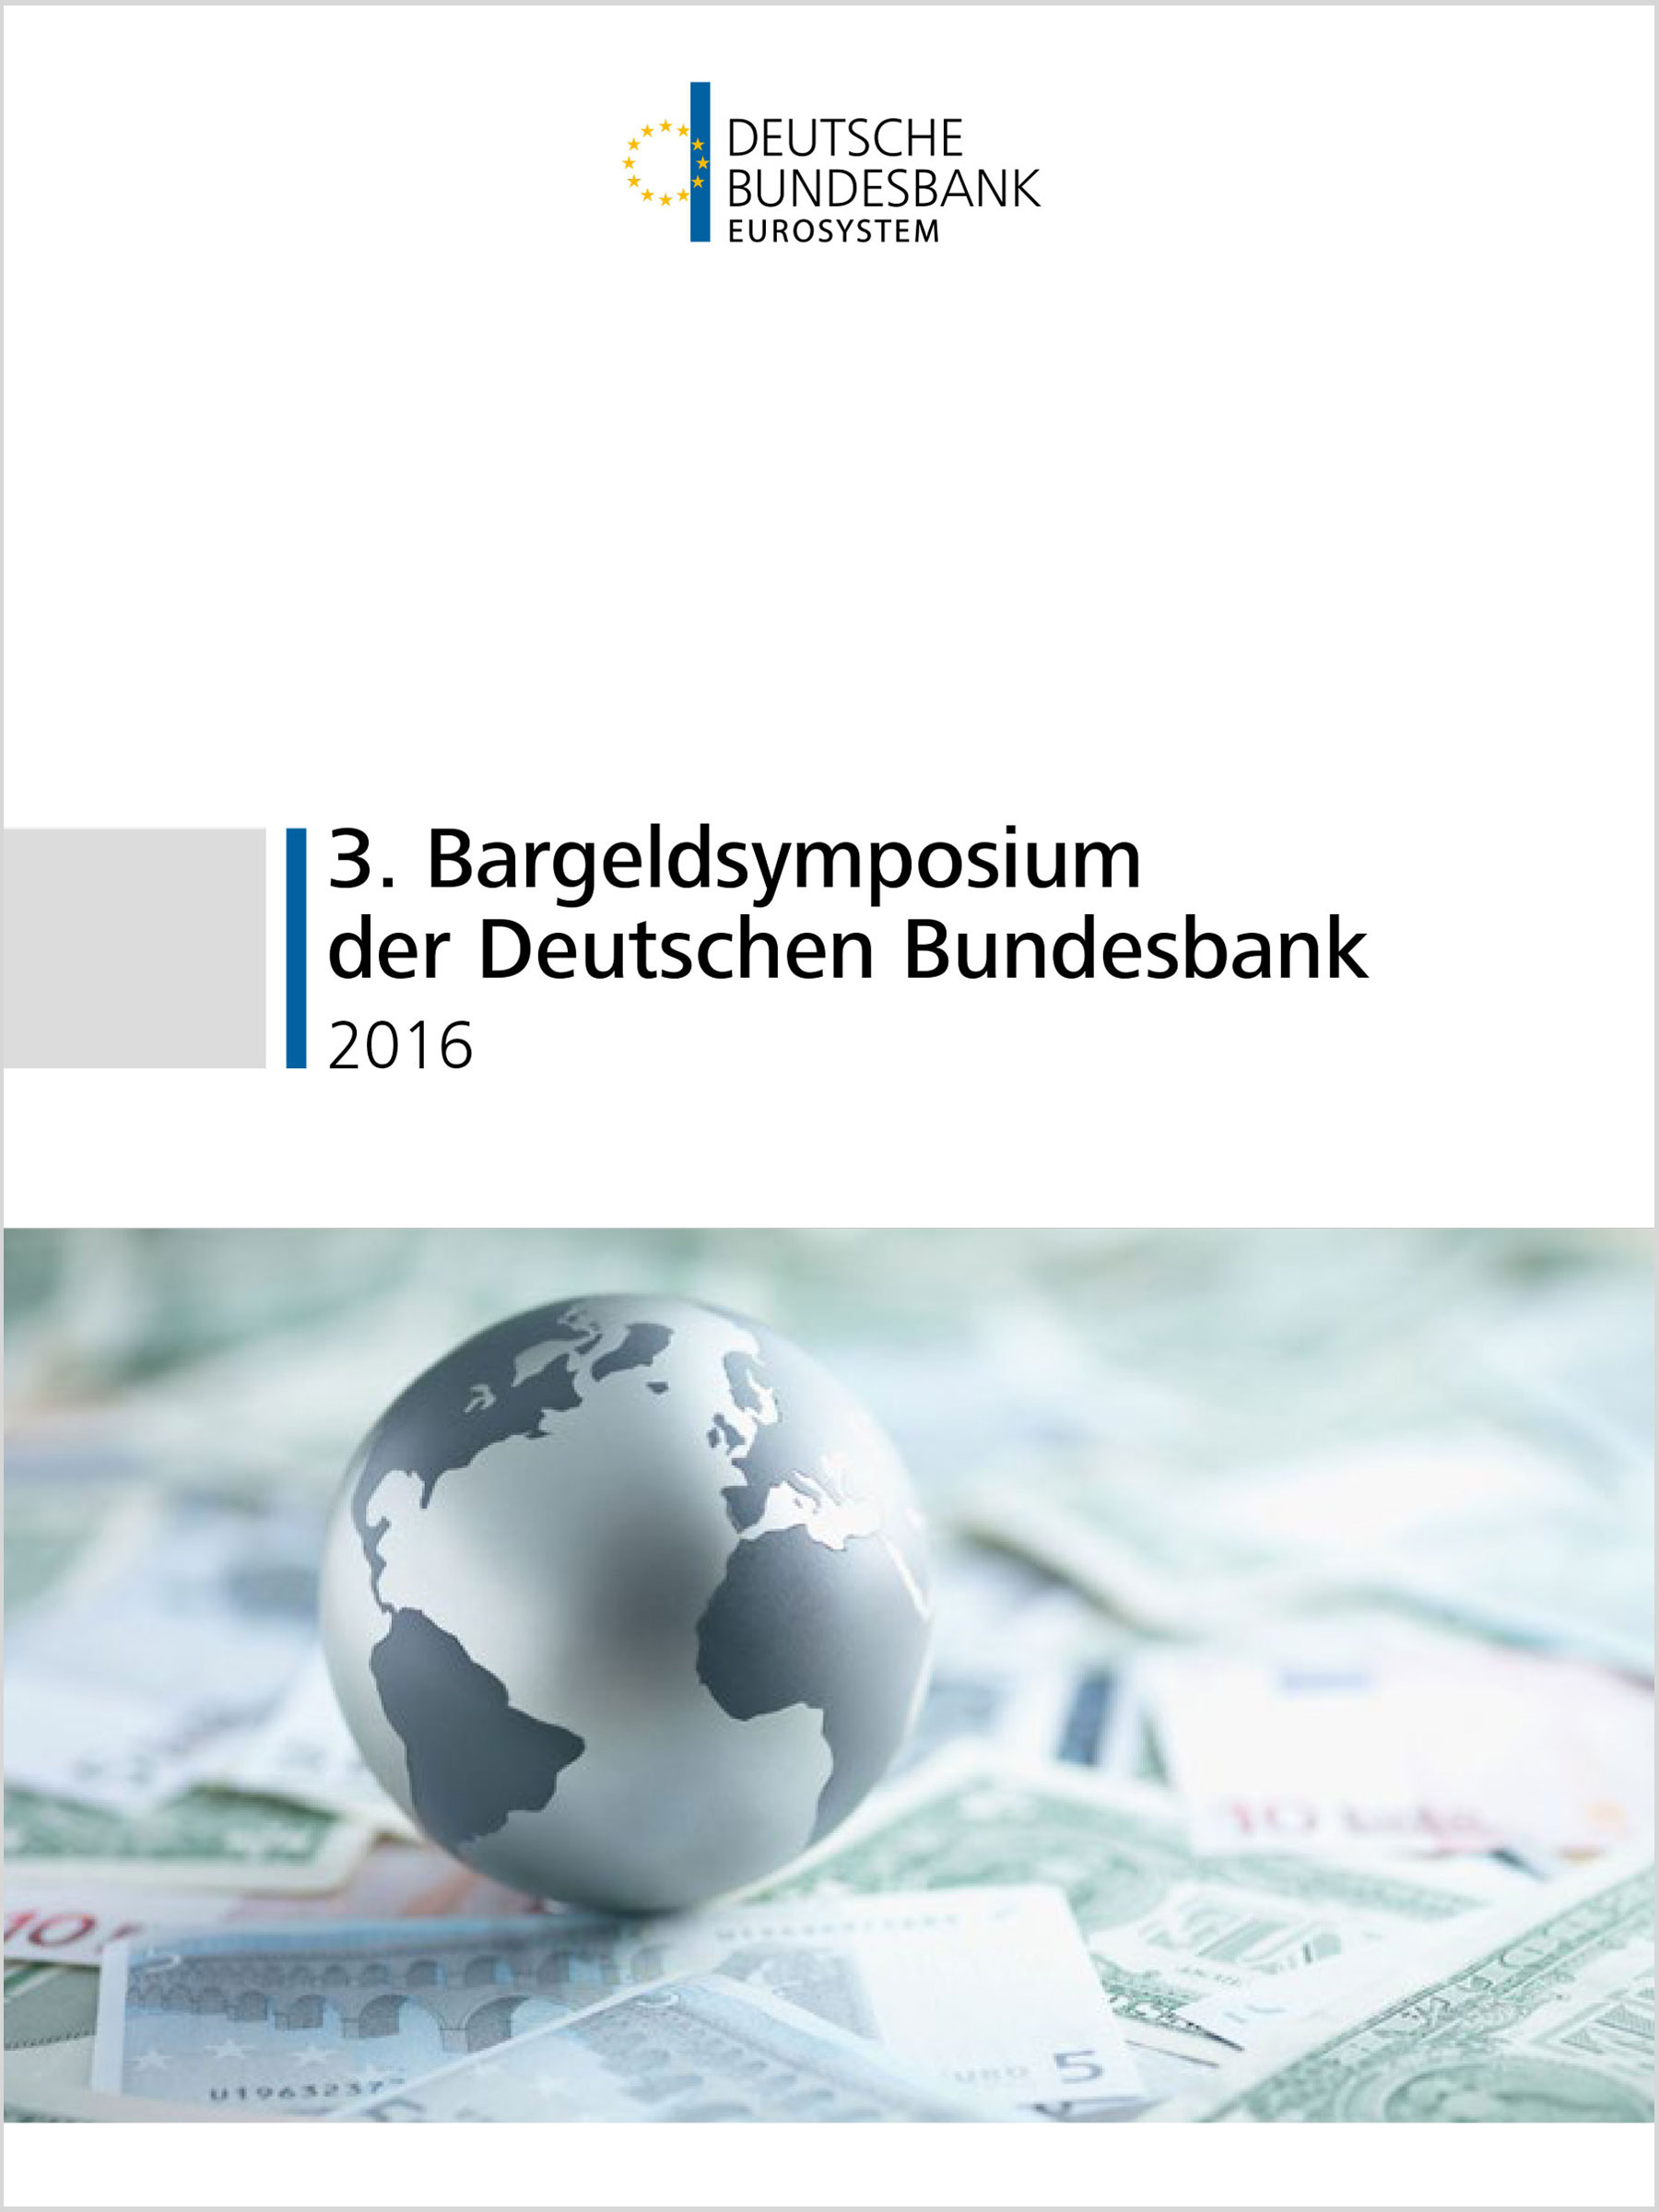 Bargeldsysmposium der Deutschen Bundesbank 2016